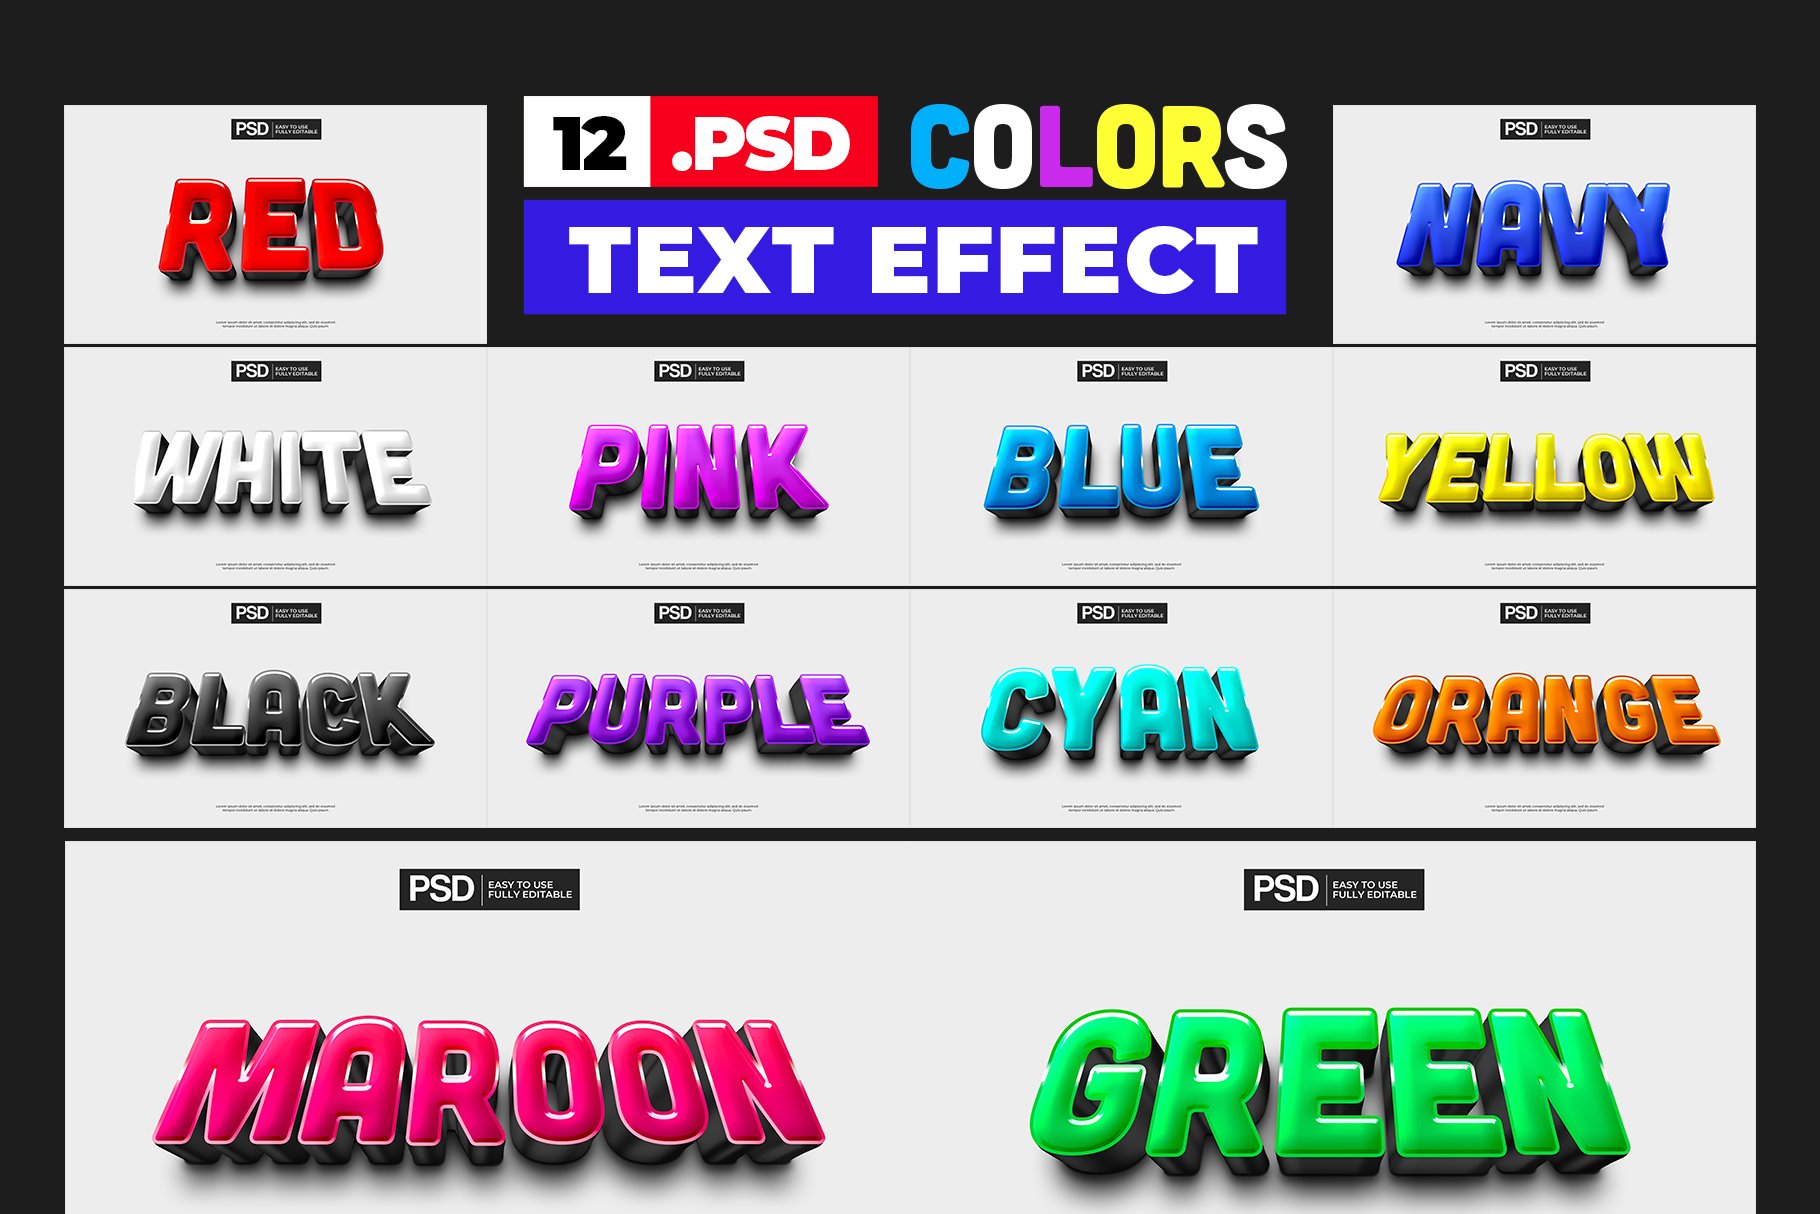 3D Colors Photoshop Text Effectcover image.